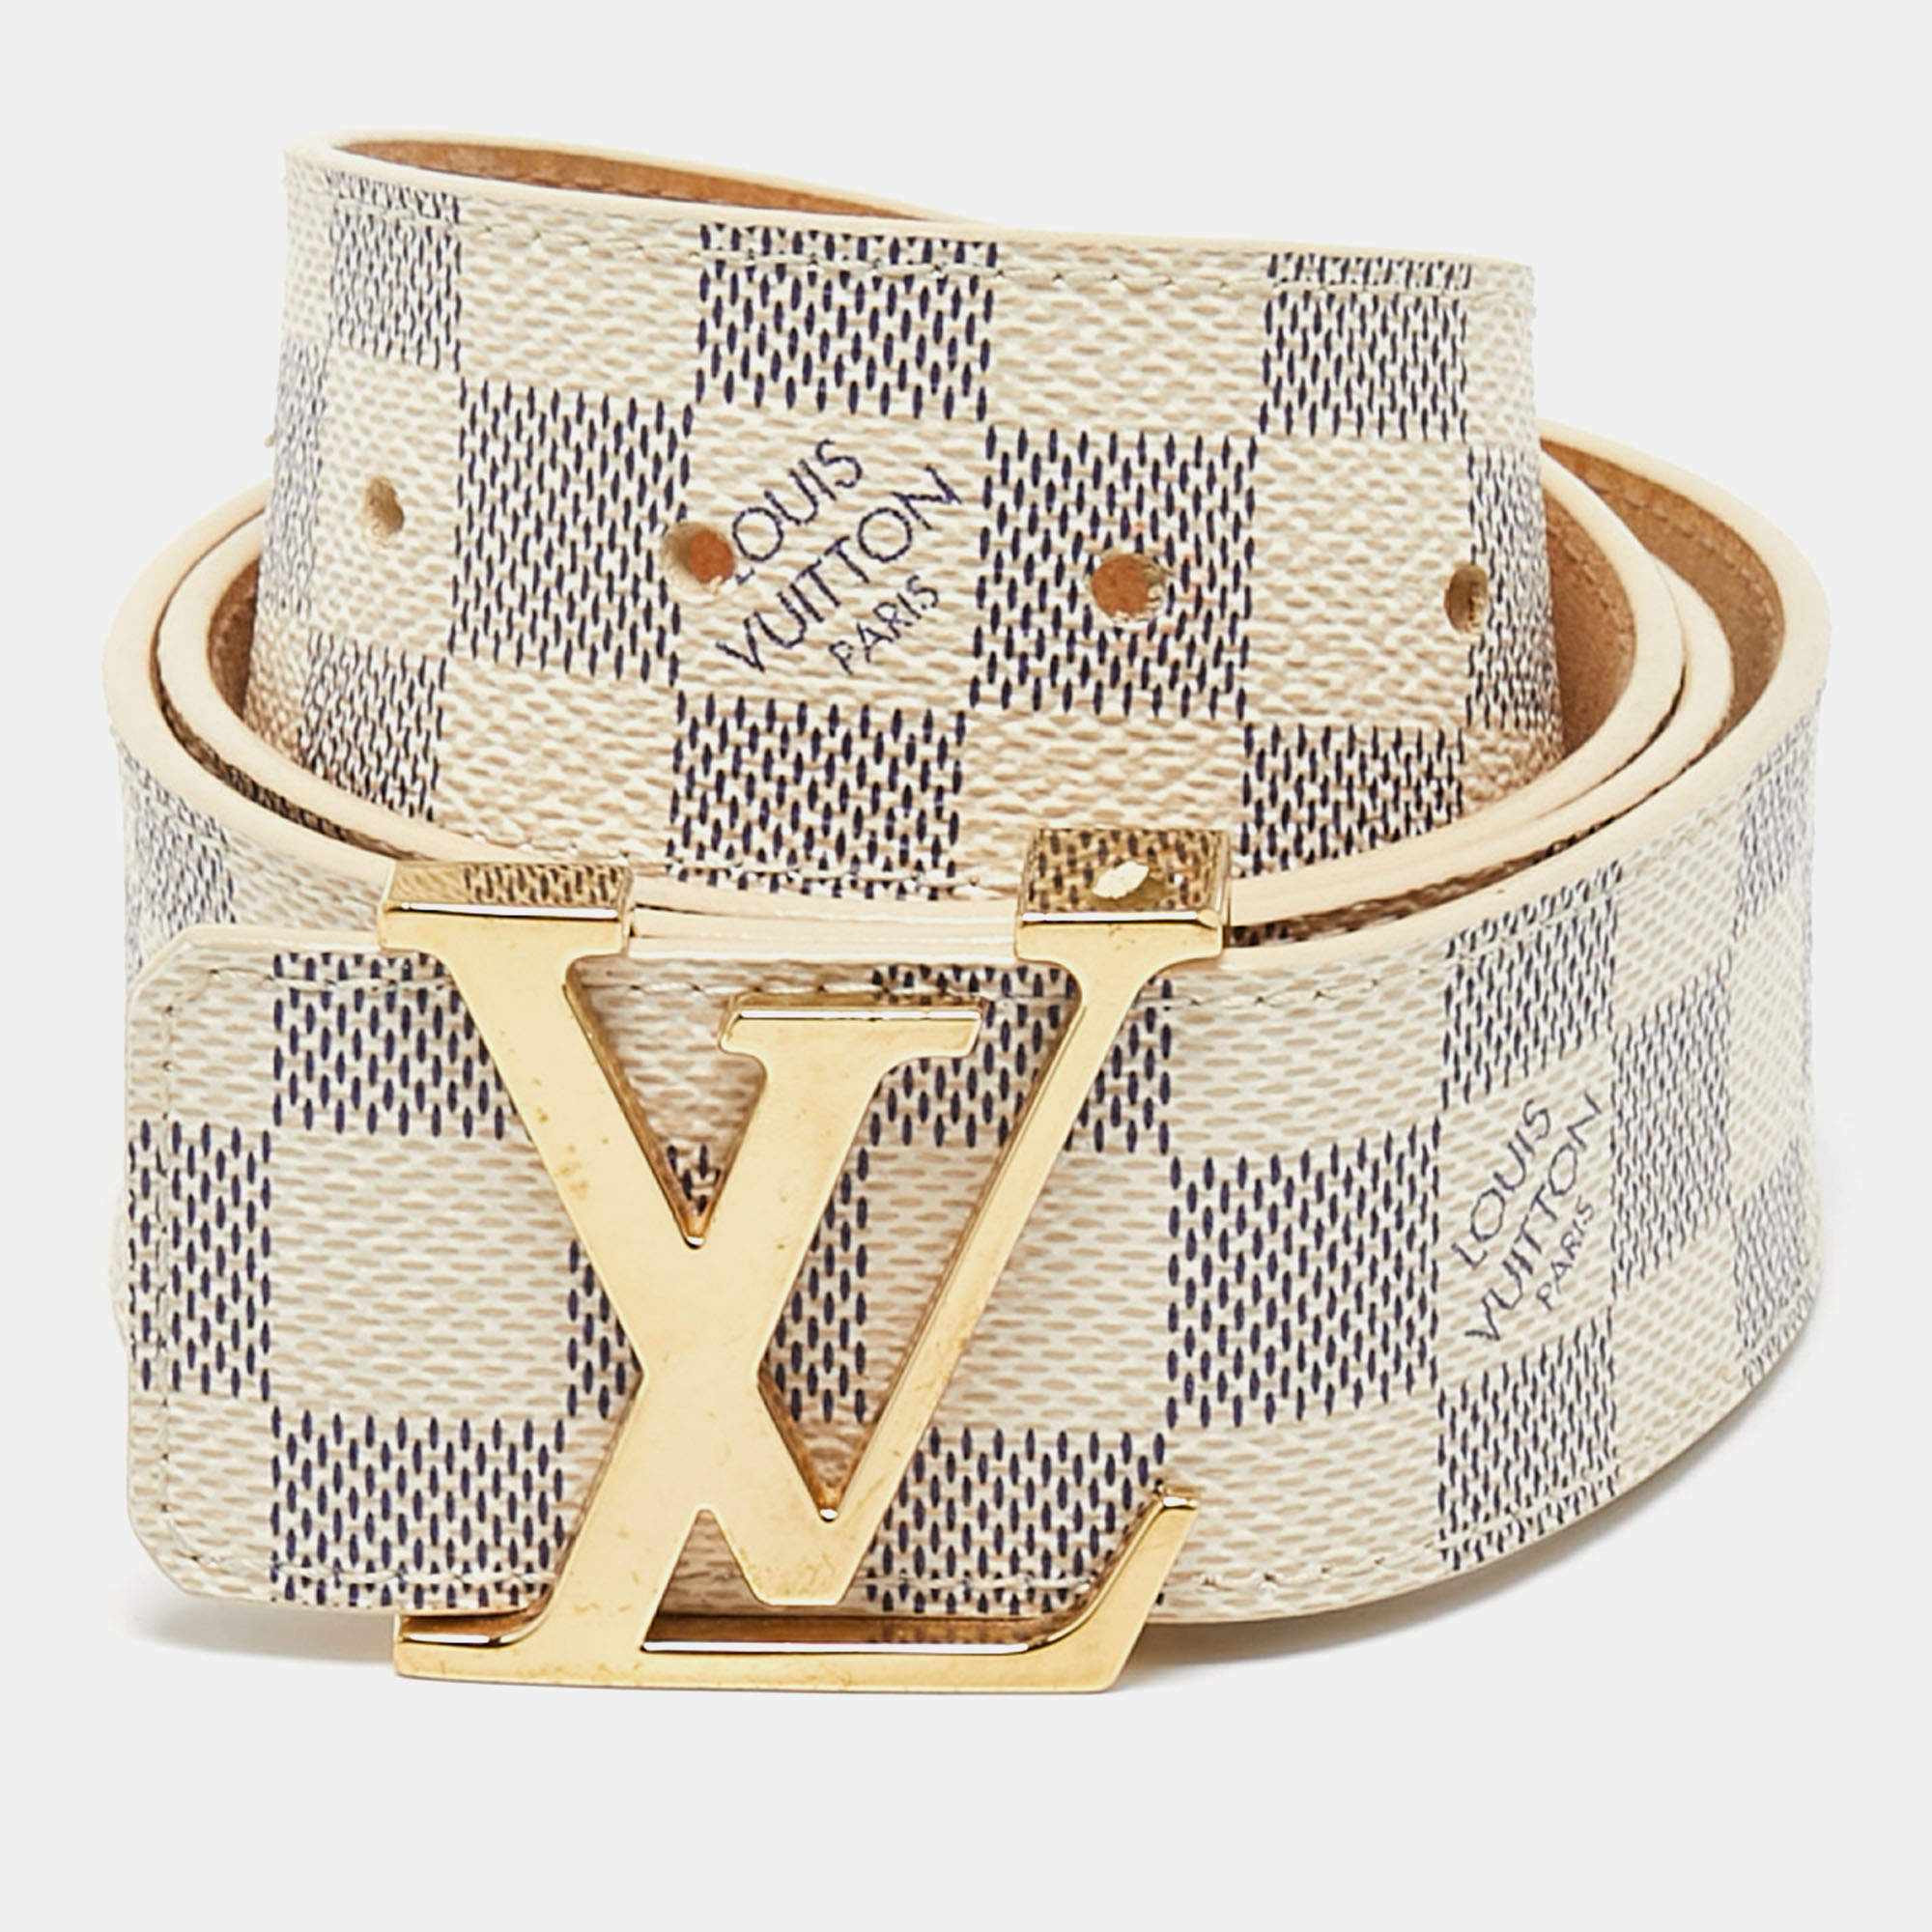 Louis Vuitton, Accessories, Authentic Louis Vuitton Damier Azur Canvas  Leather Voyage Belt Size 8534 M9837